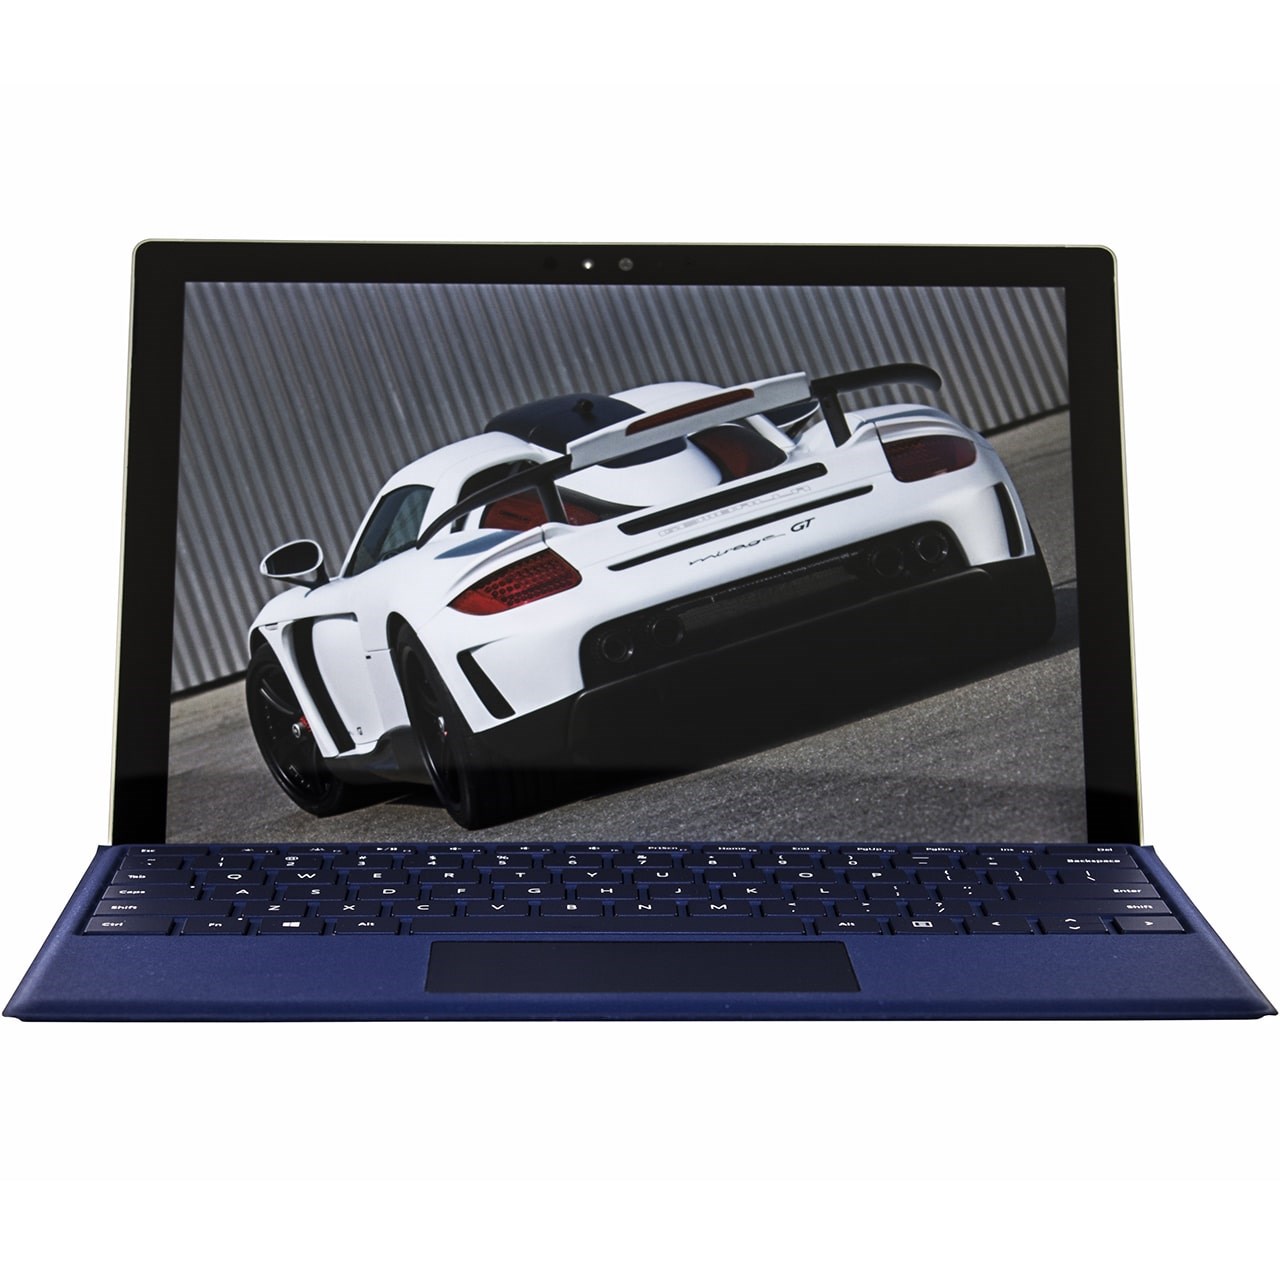 تبلت مایکروسافت مدل Surface Pro 4 - B به همراه کیبورد سرمه ای Dark Blue Type Cover و کیف Golden Guard - ظرفیت 128 گیگابایت